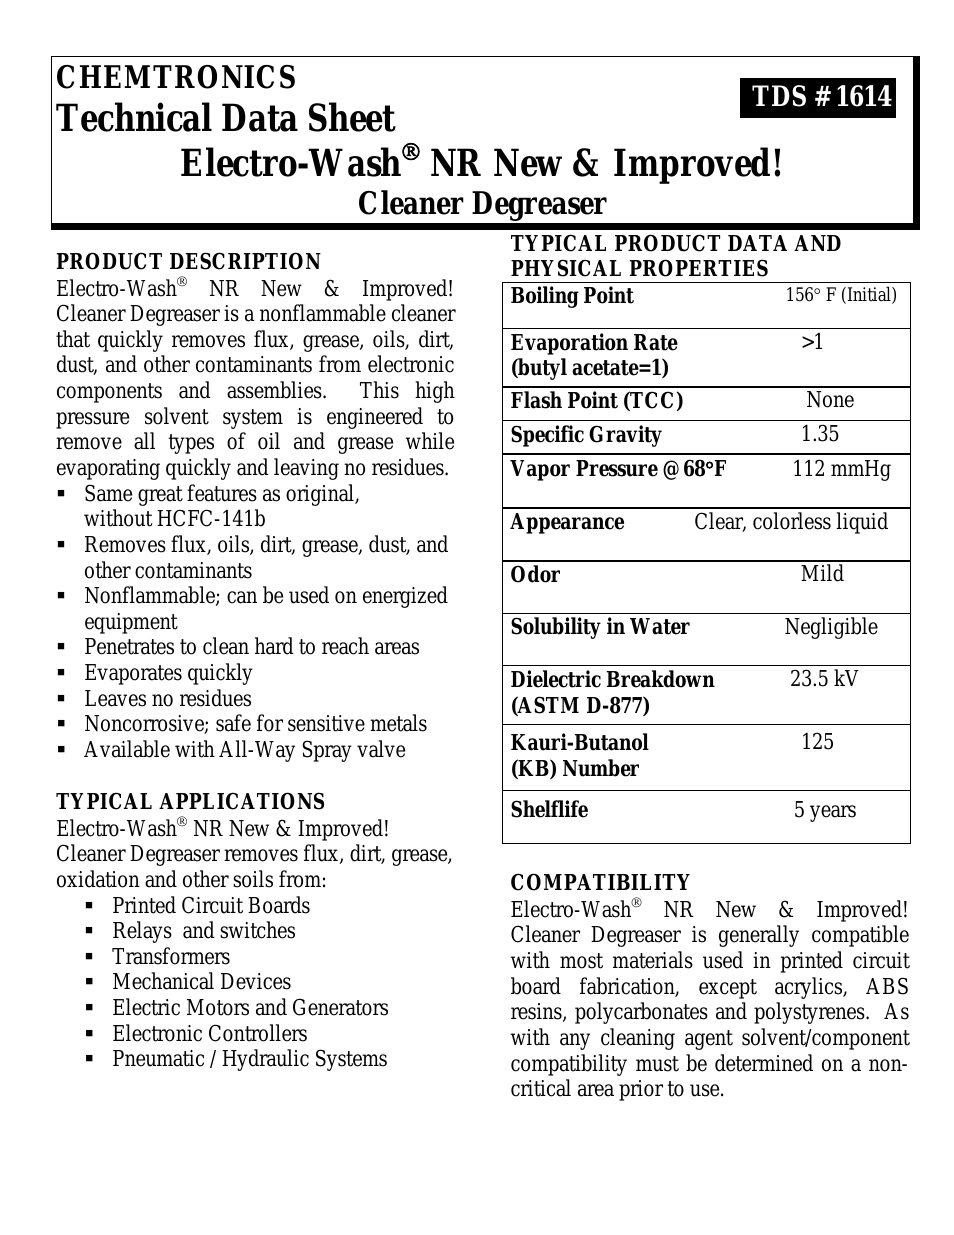 Electro-Wash NR ES114